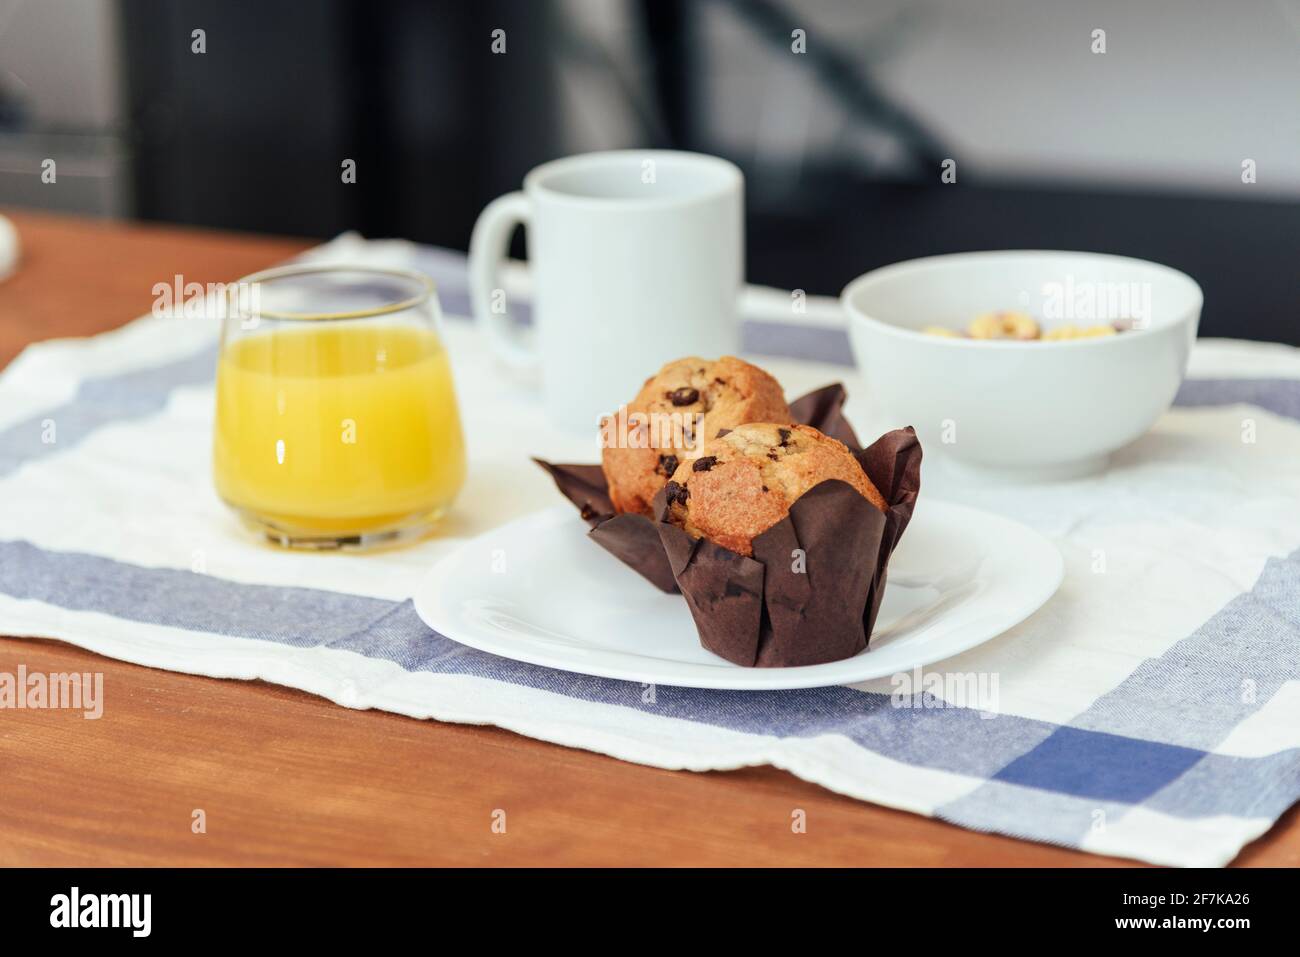 Zum Frühstück gab es Kaffee, Orangensaft, Muffins und Müsli in verschiedenen Farben. Konzept des häuslichen Lebens. Stockfoto